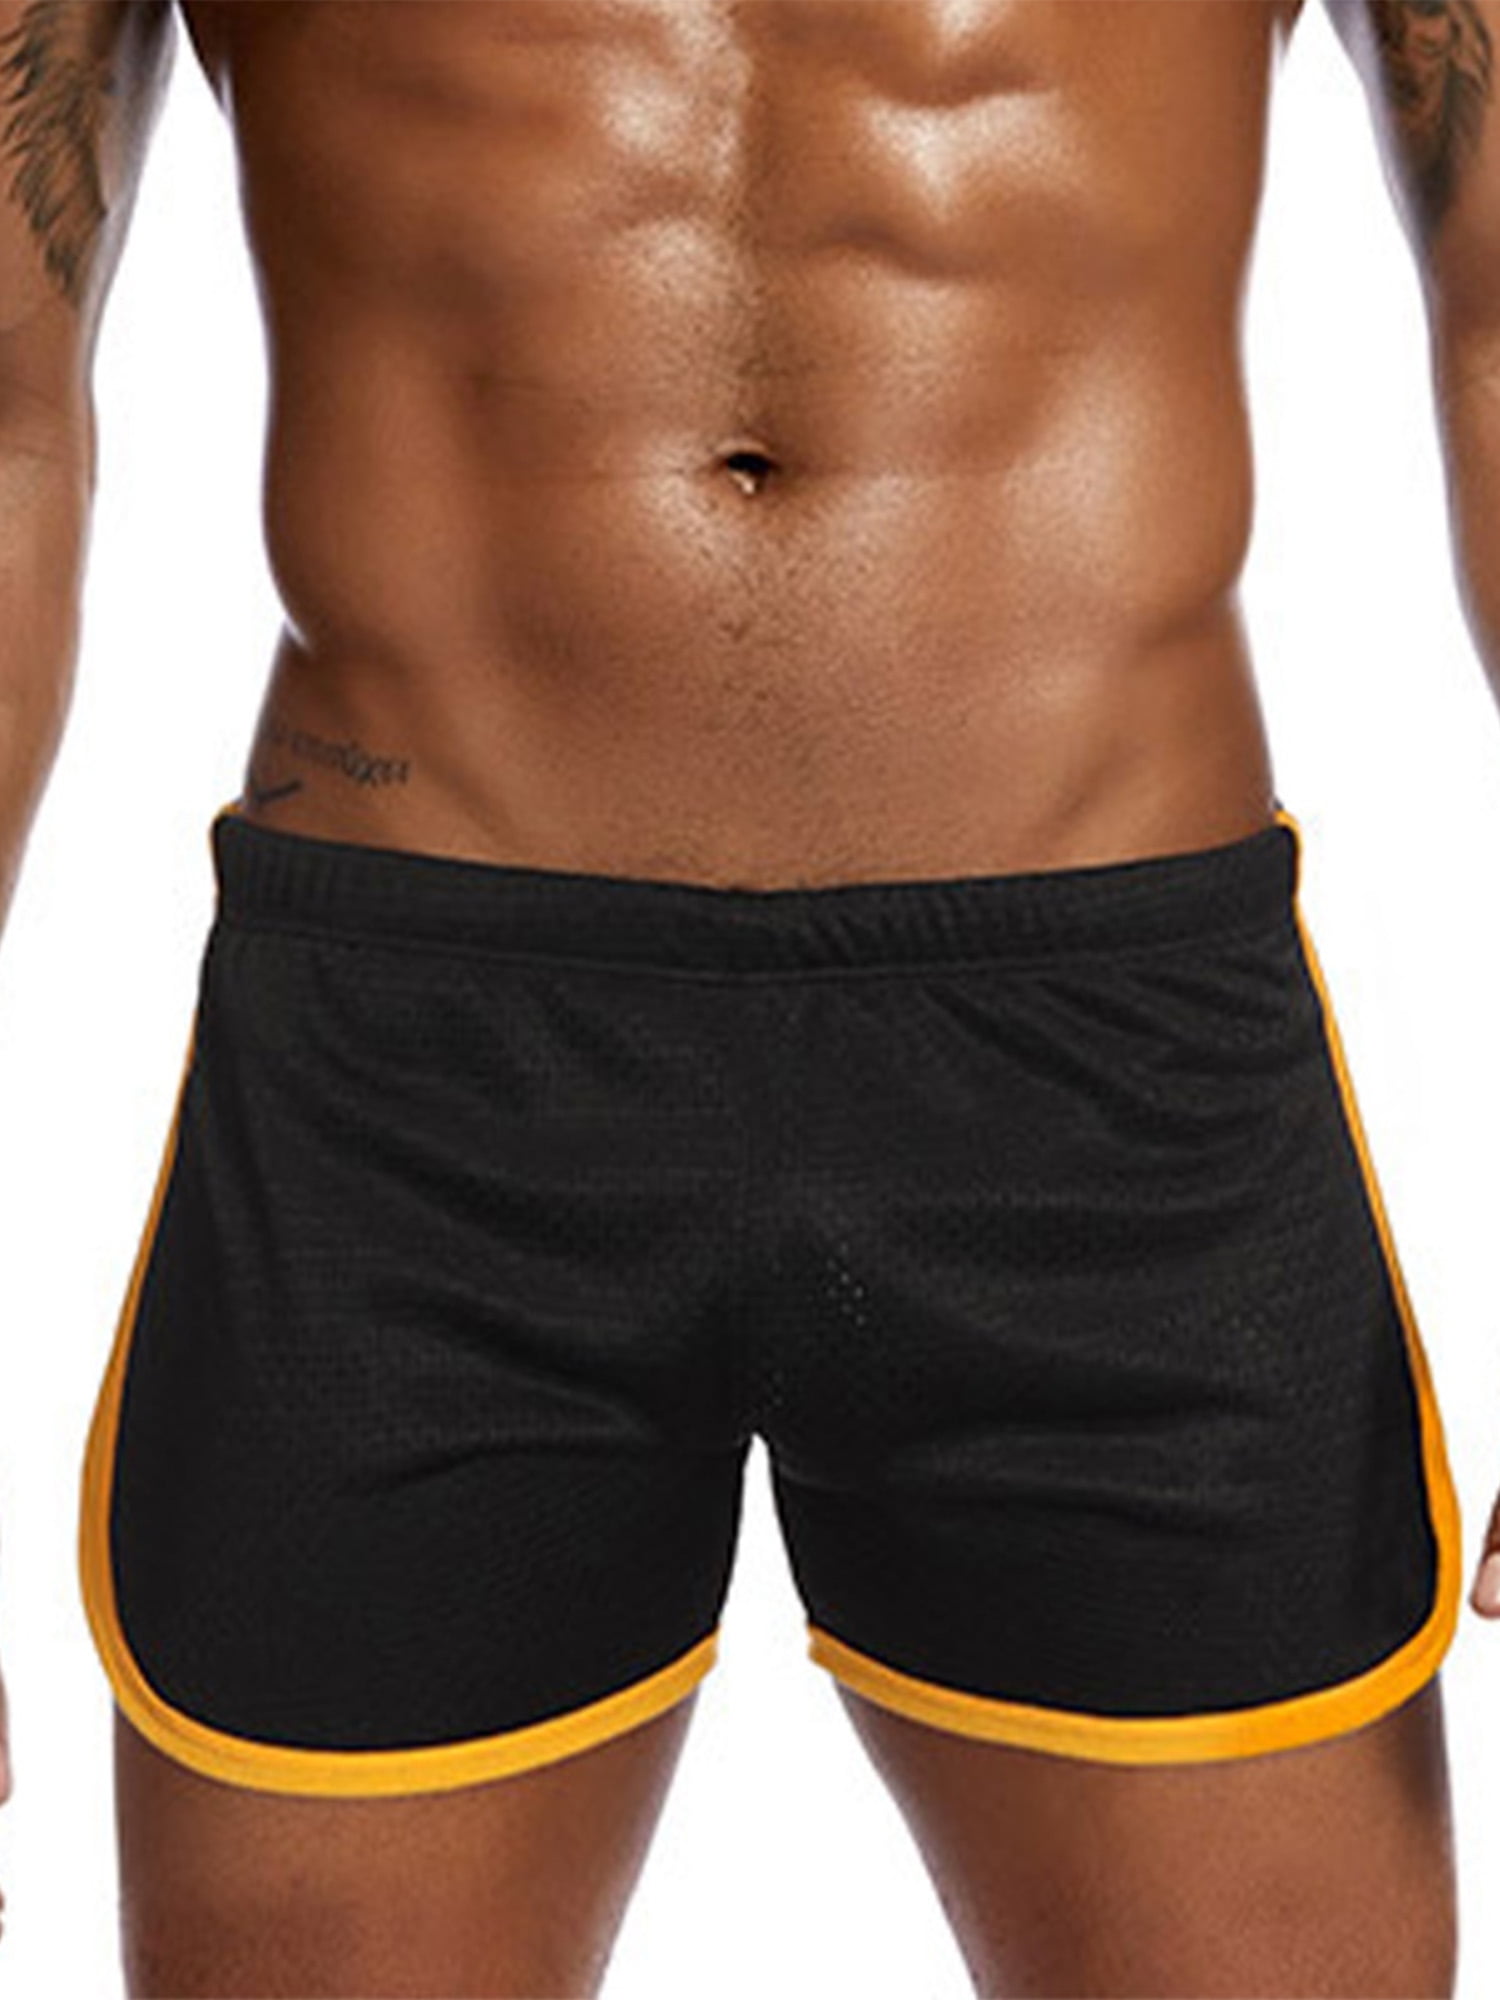 mesh short shorts for men